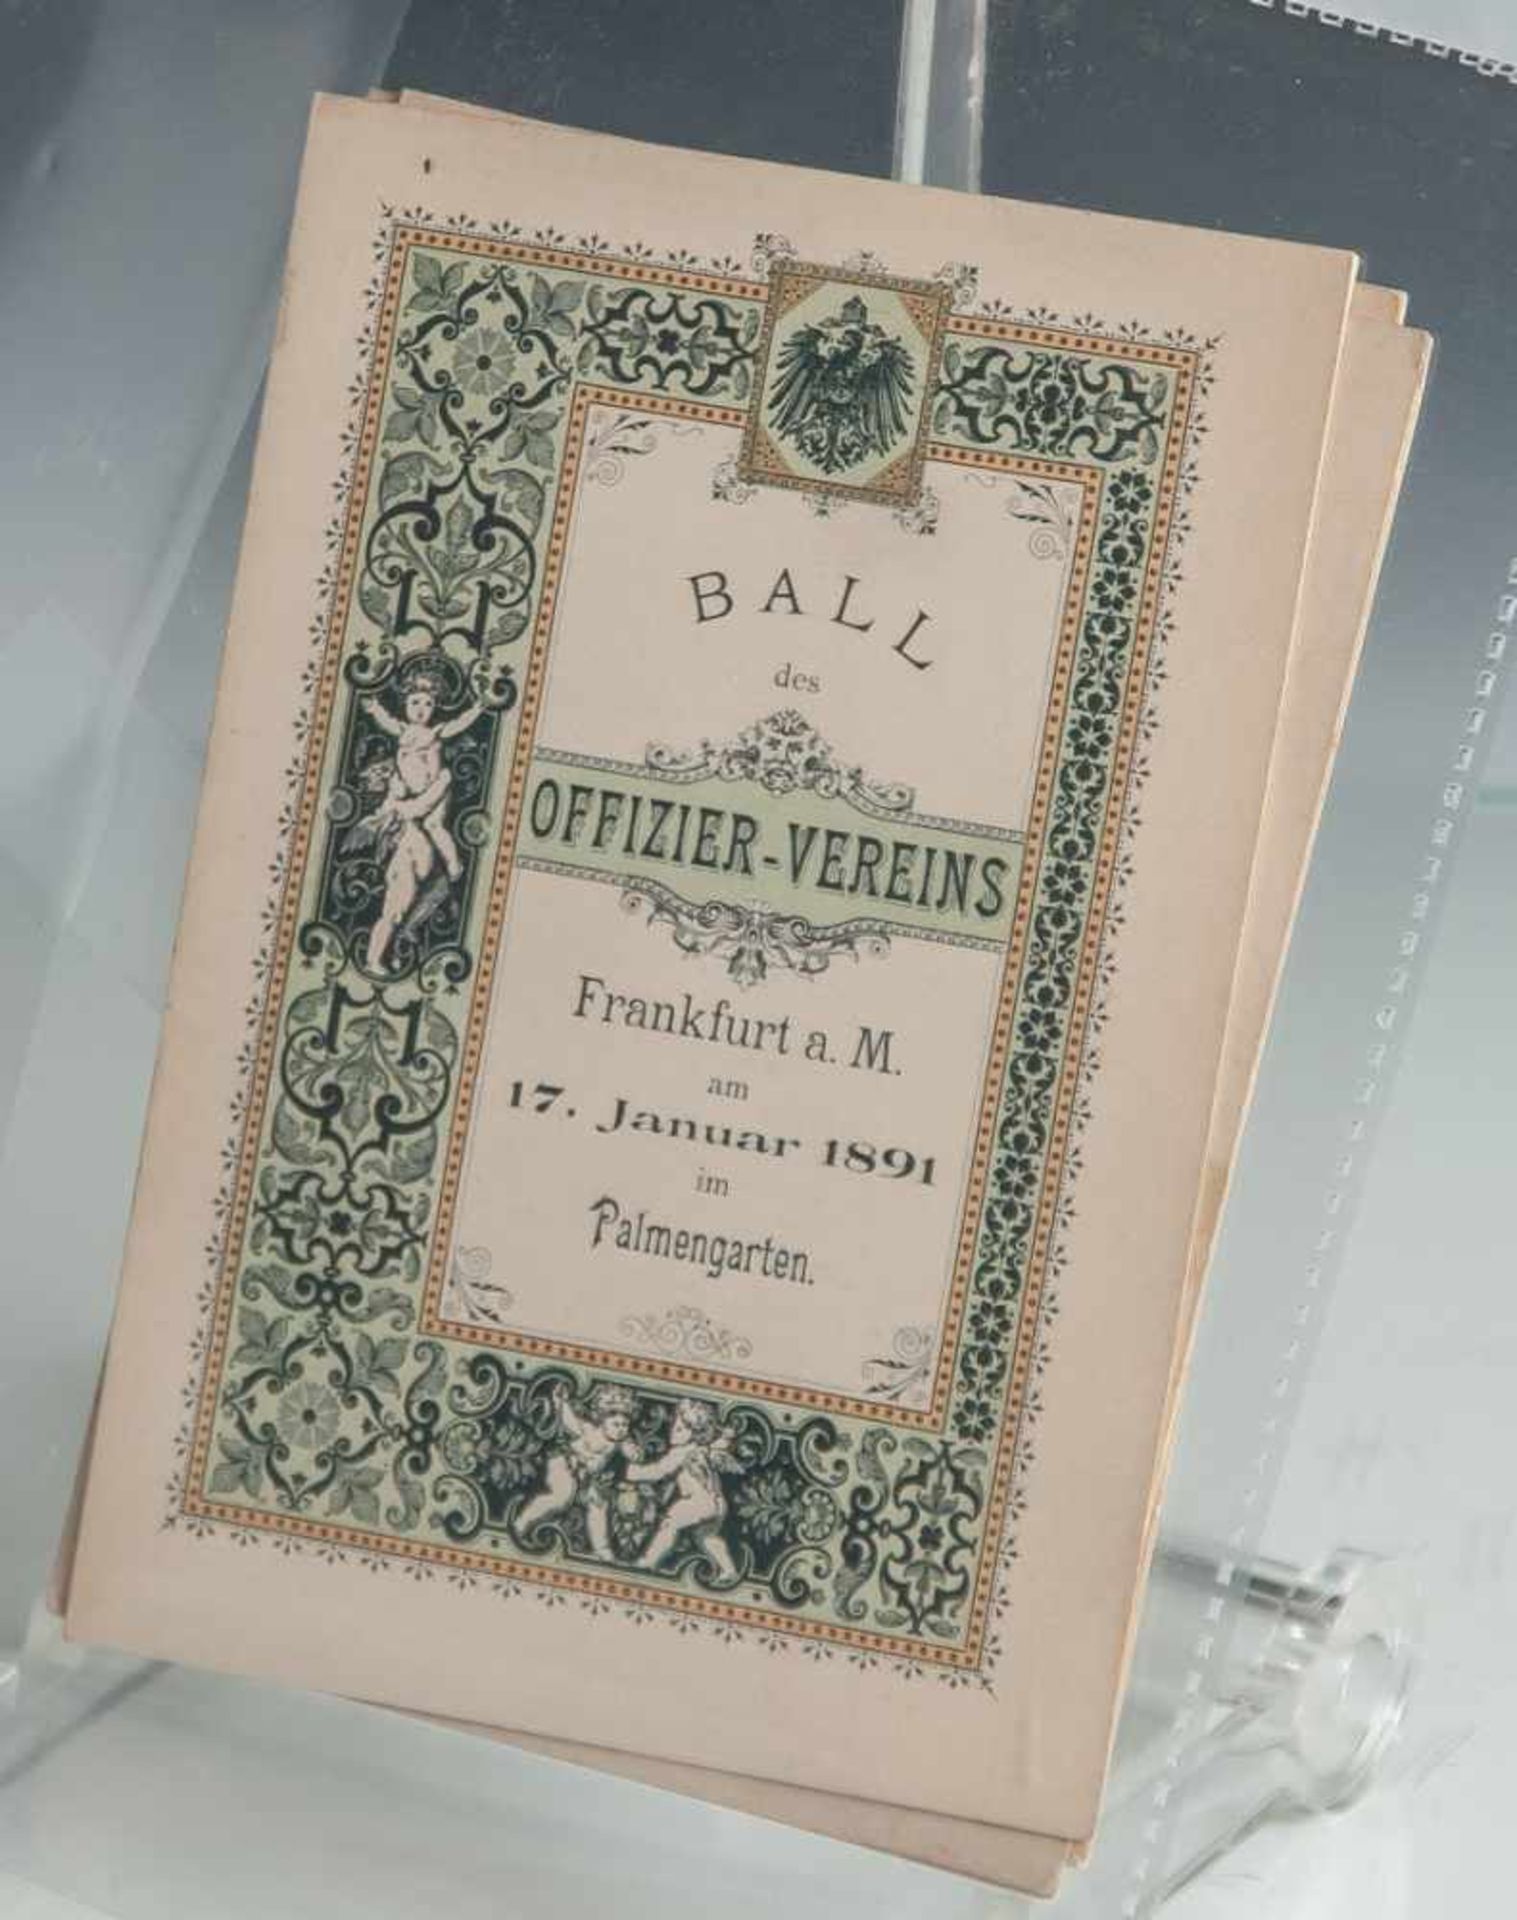 3 gleiche Einladungskarten "Ball des Offiziers-Vereins-Frankfurt/Main 17. Jan. 1891 imPalmengarten",